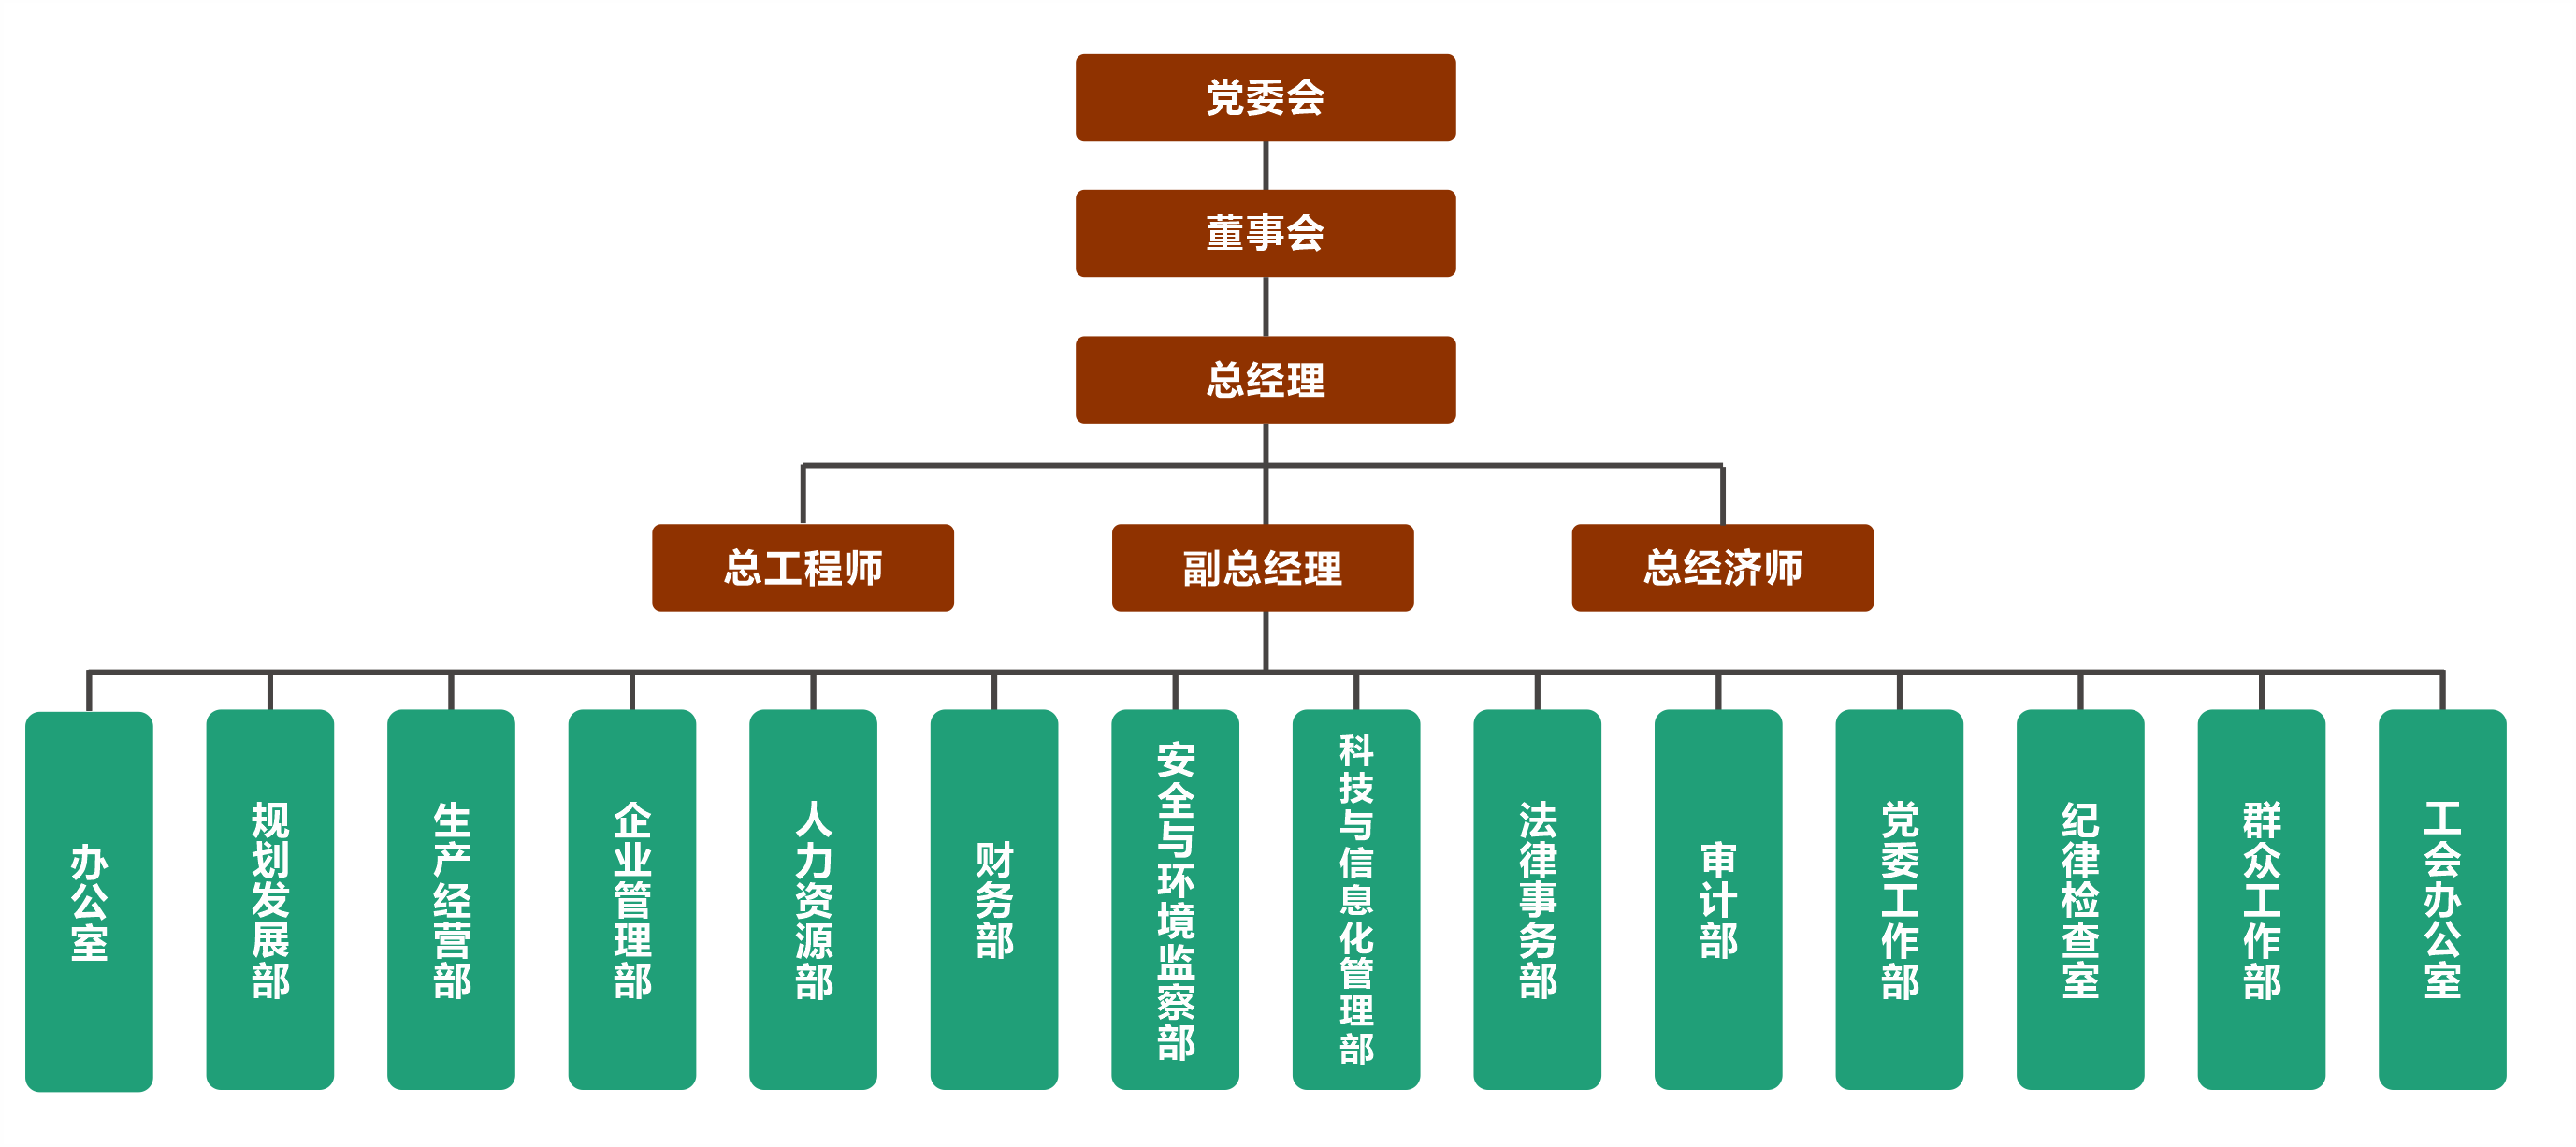 爱游戏官网(中国)集团有限公司官网组织机构图20210225.png